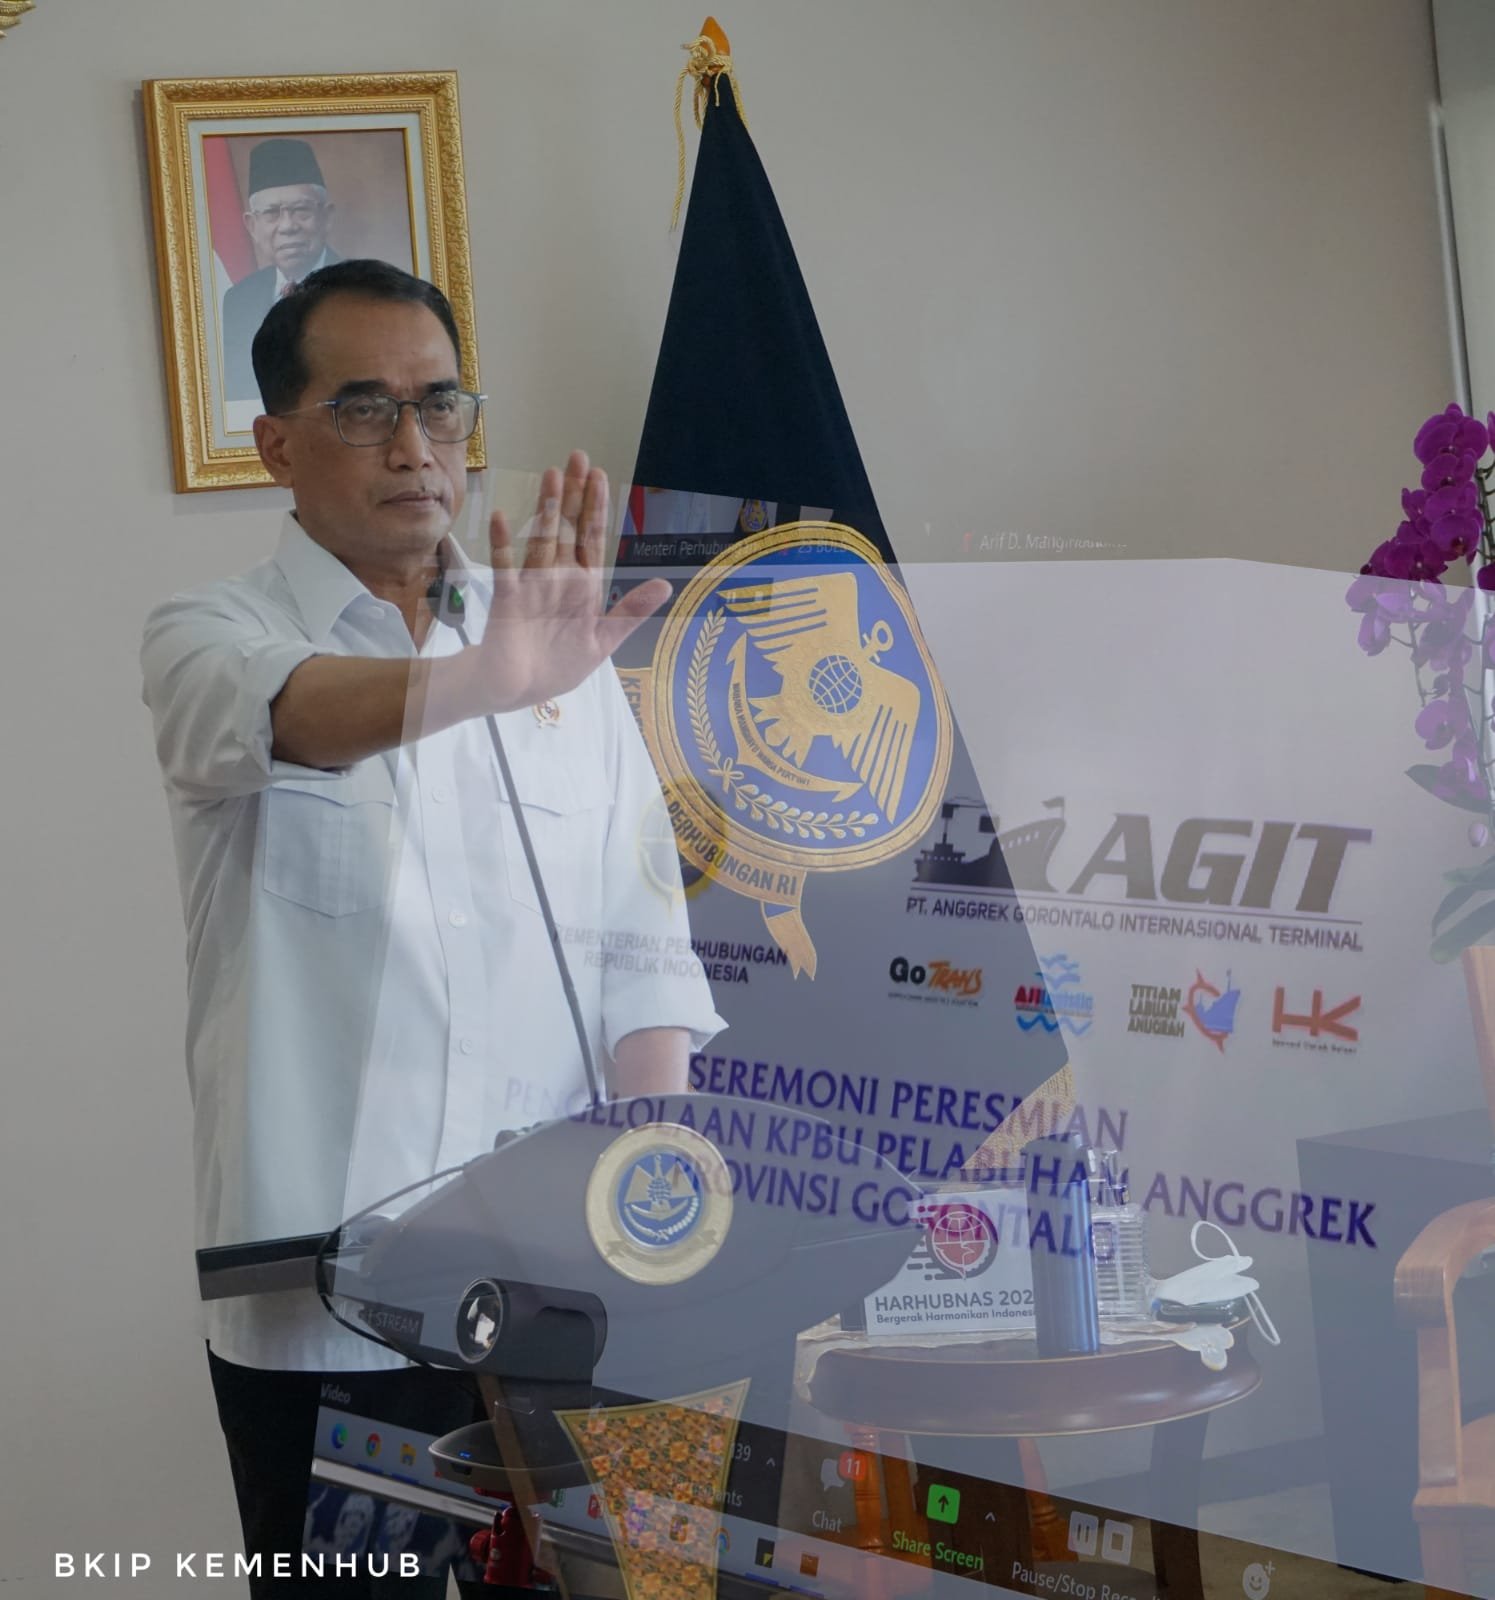  Mulai Hari Ini, Pelabuhan Anggrek Gorontalo Resmi Dikelola dengan Skema Pendanaan Kreatif Non-APBN